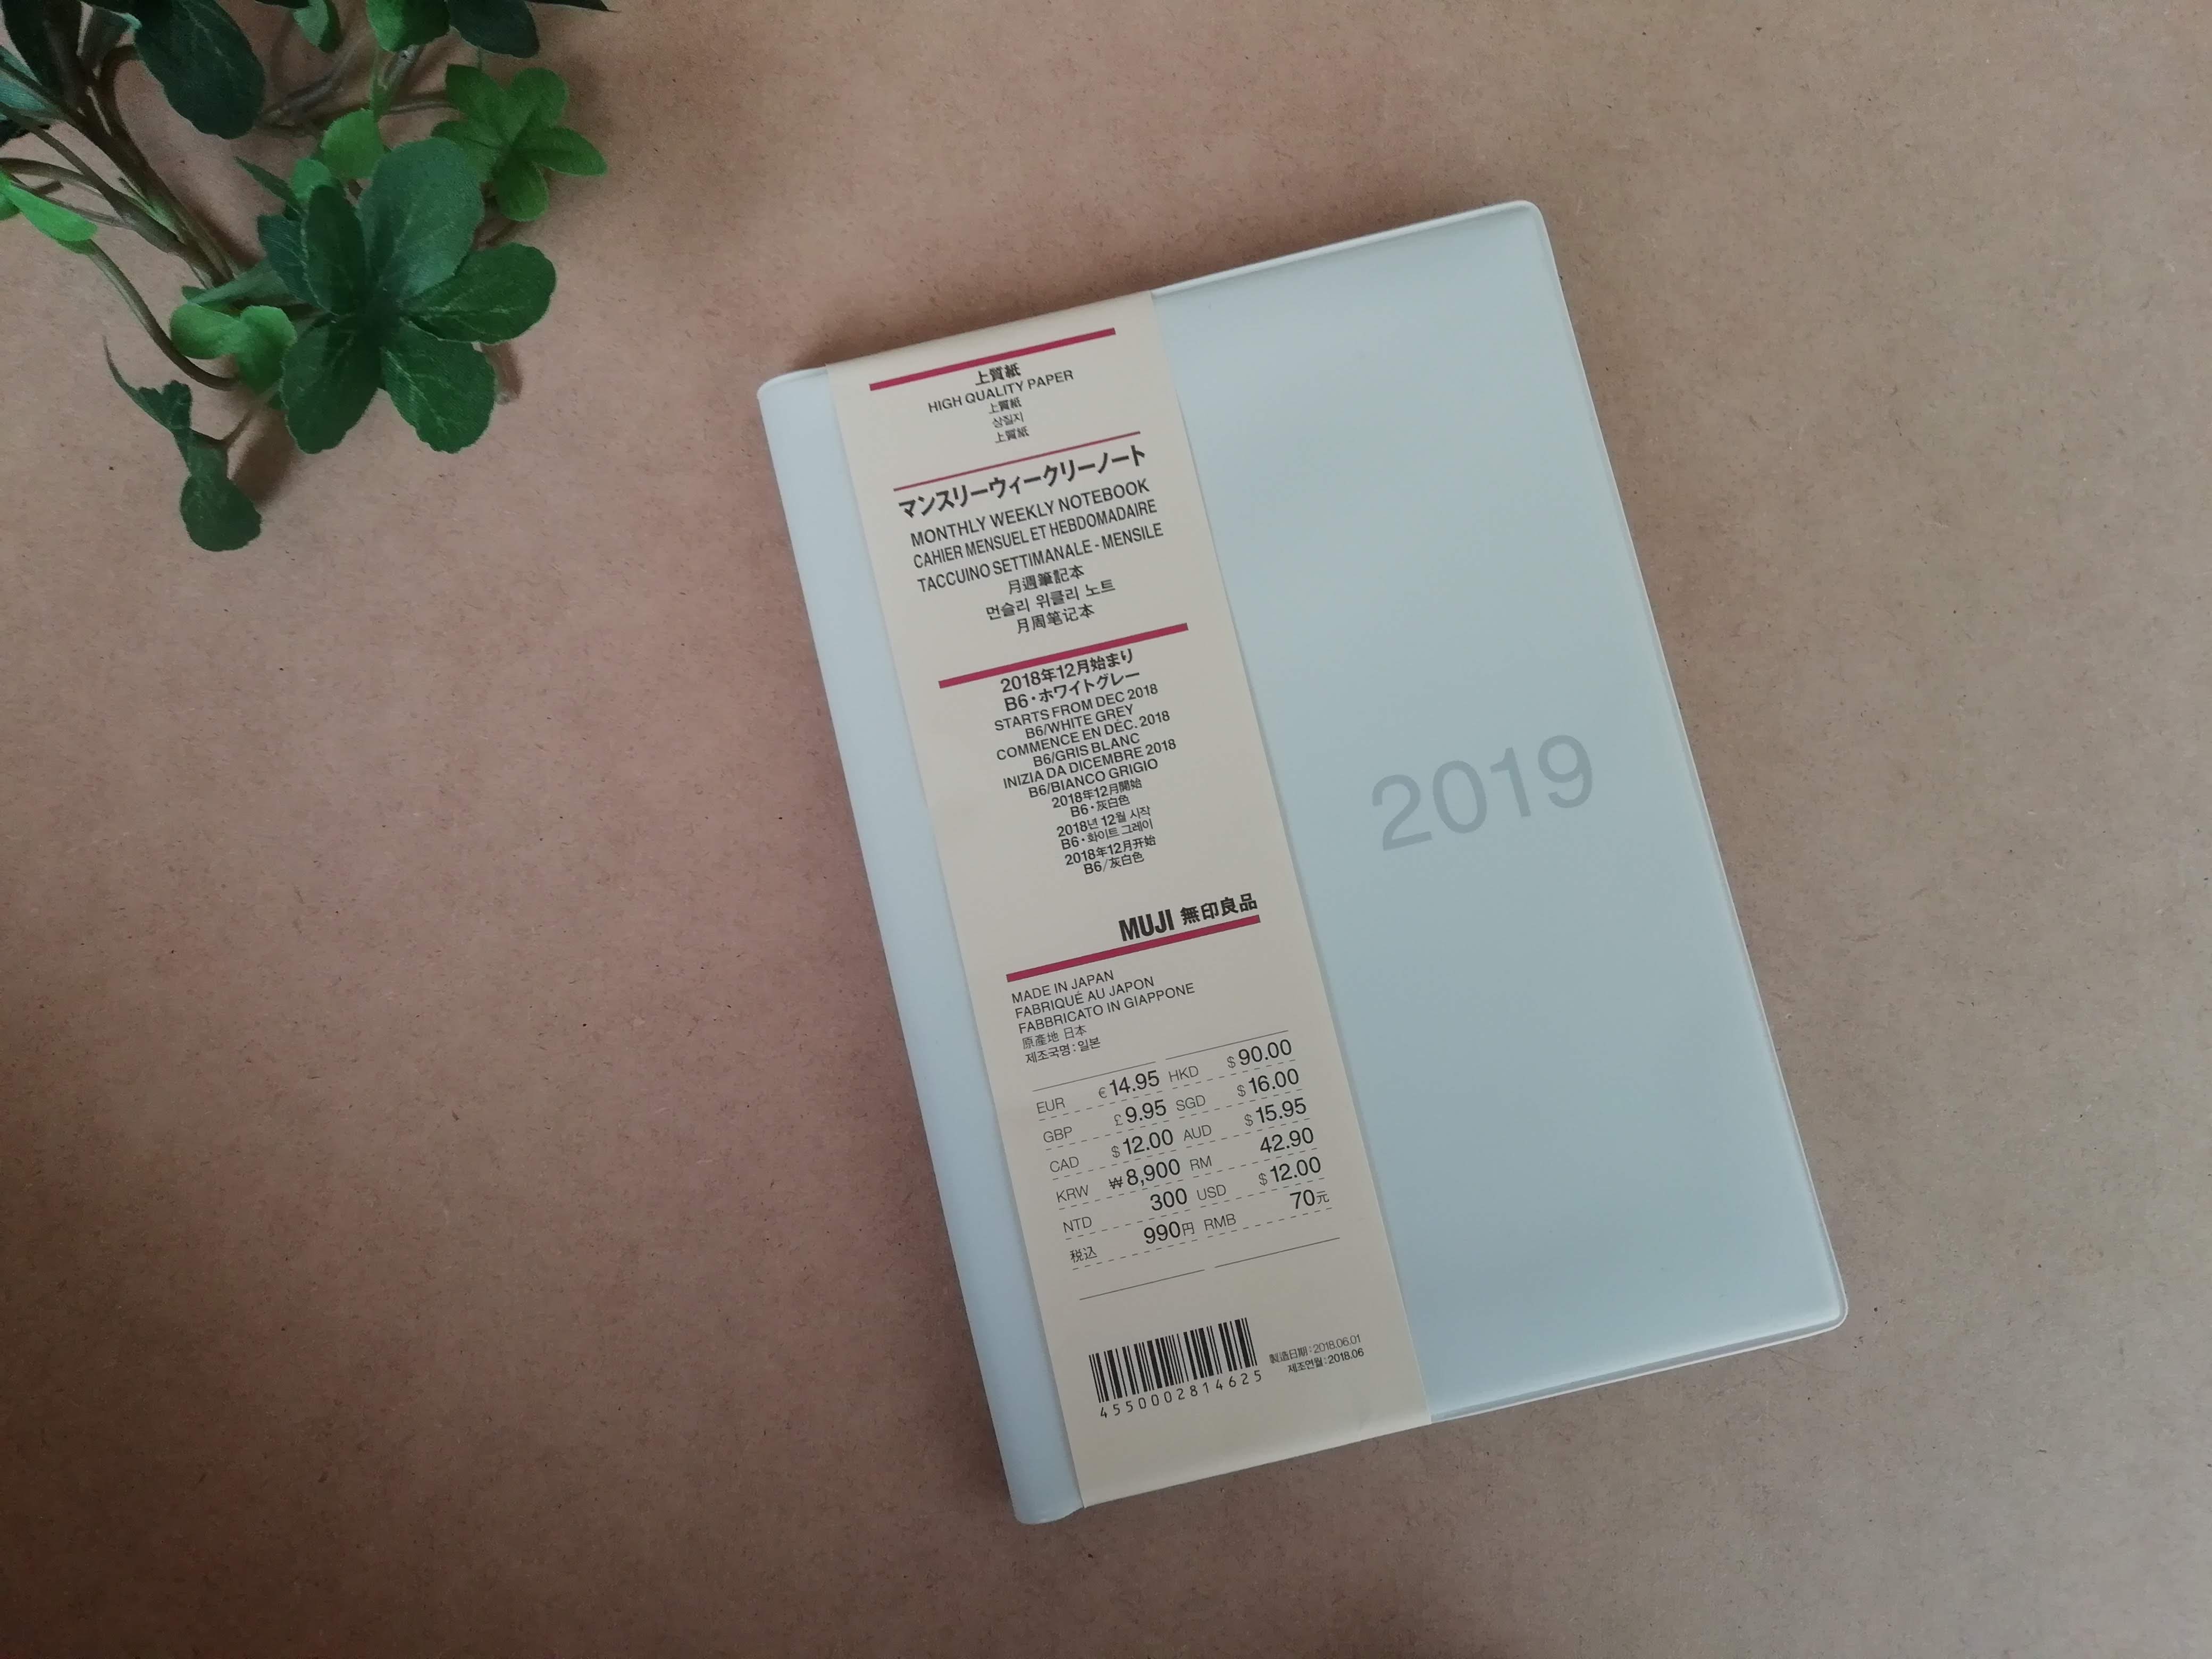 【無印良品】2019年 手帳・スケジュール帳 スライダーポケットを利用してシンプルに使いやすく